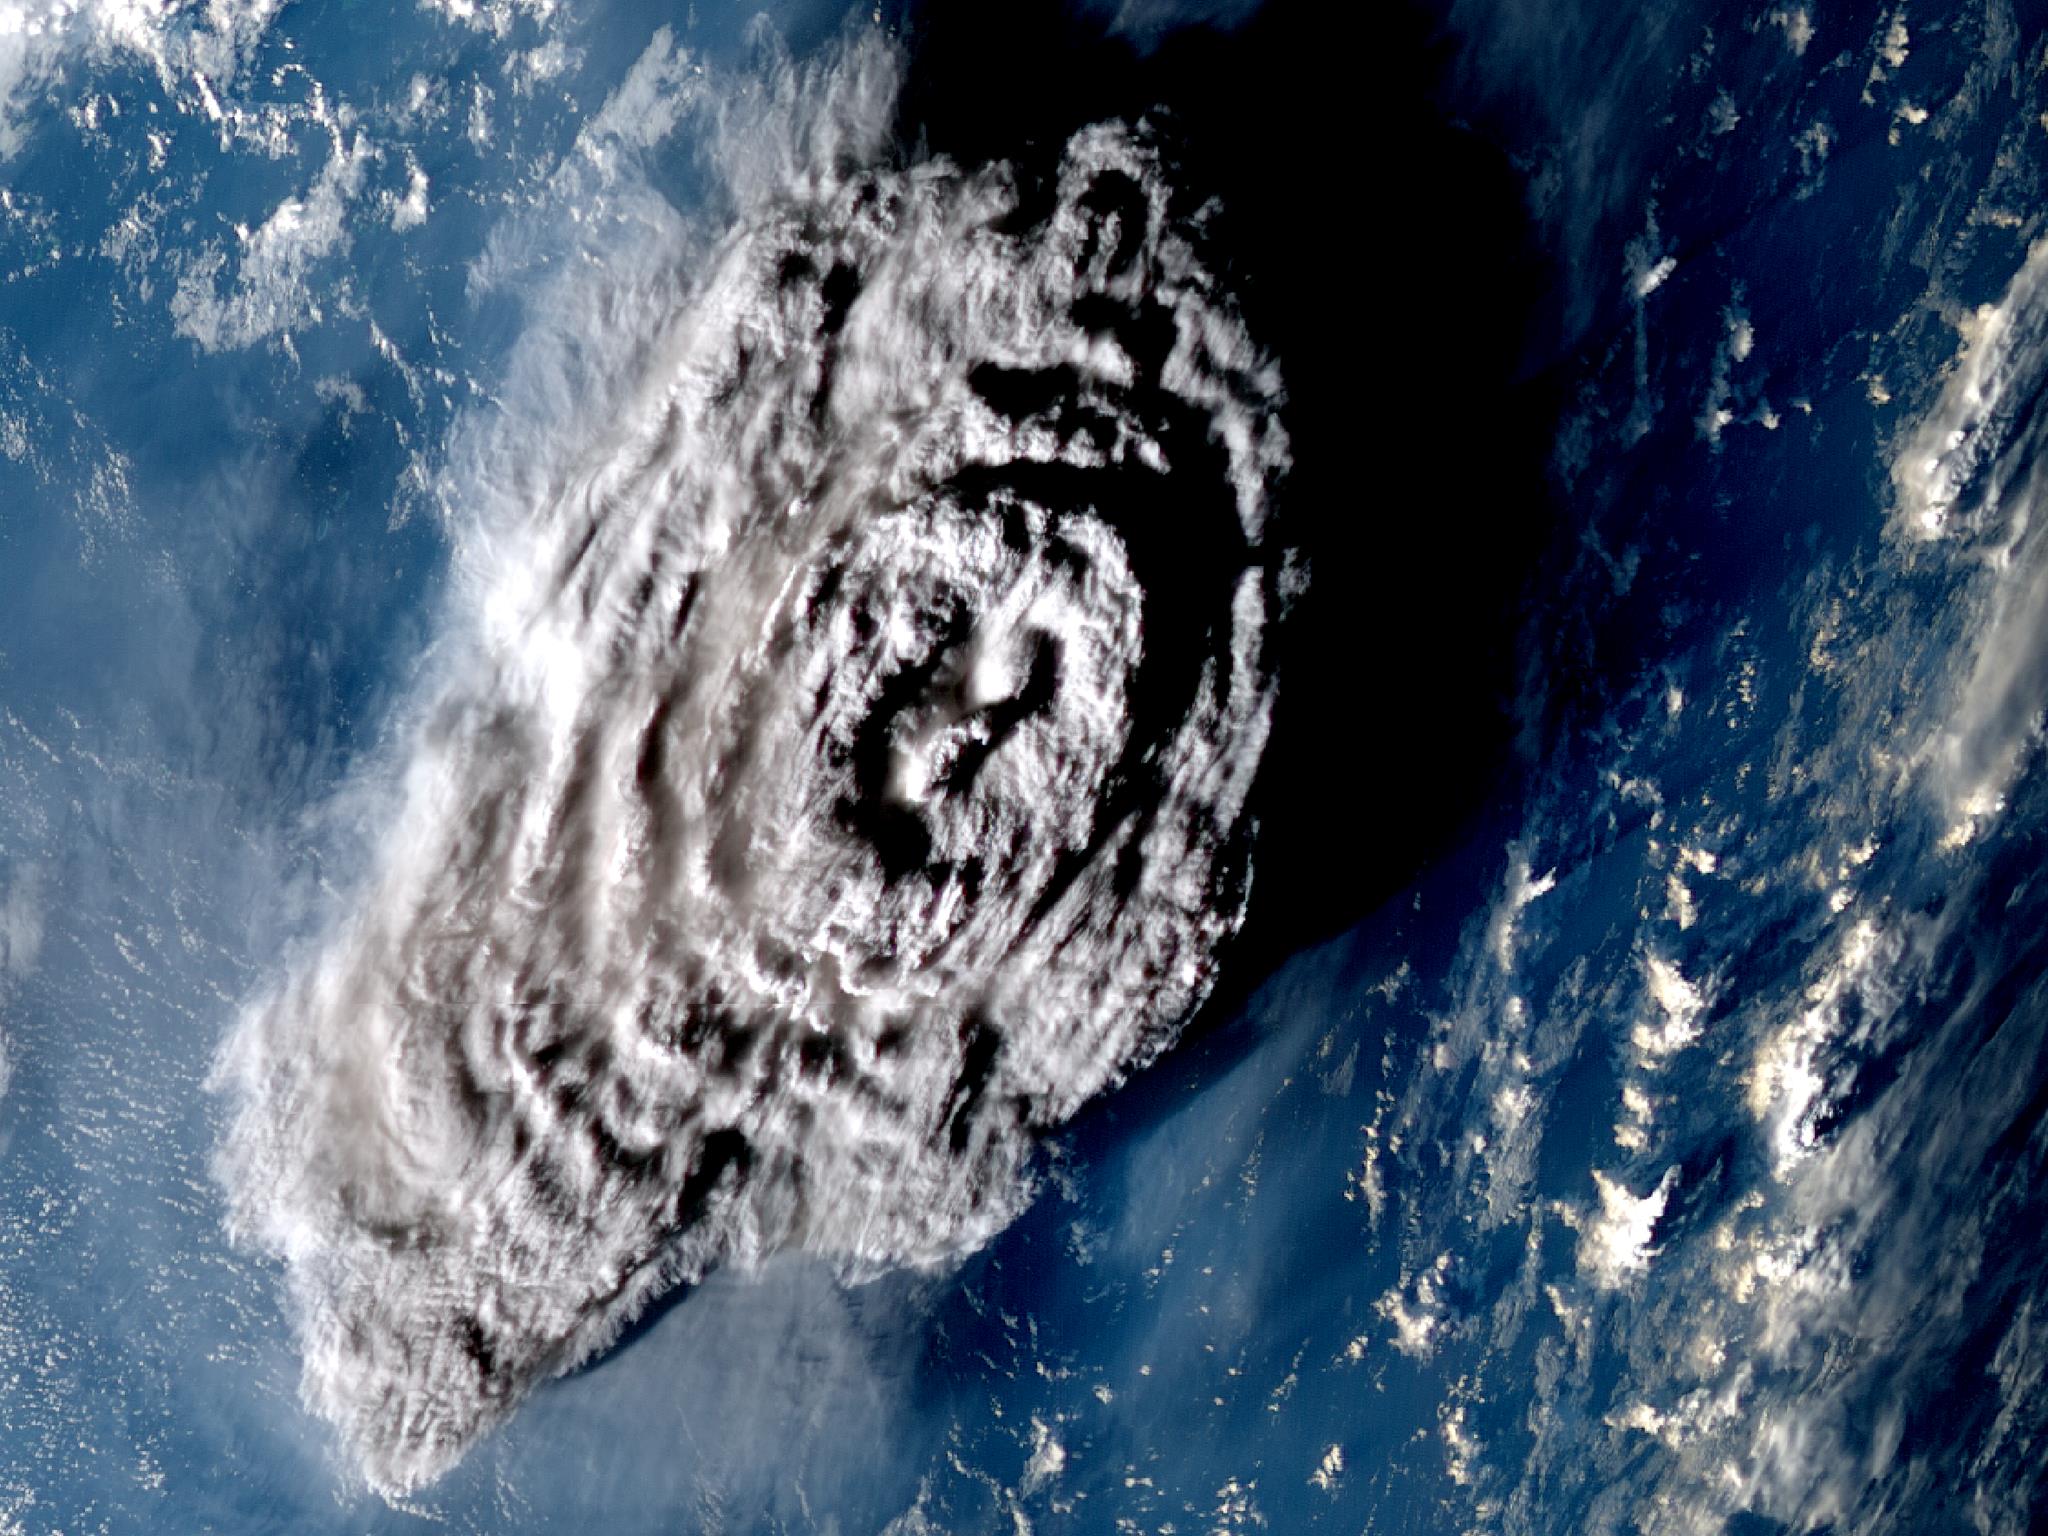 Erupção do vulcão de Tonga libertou a “nuvem de poeiras” mais alta de sempre